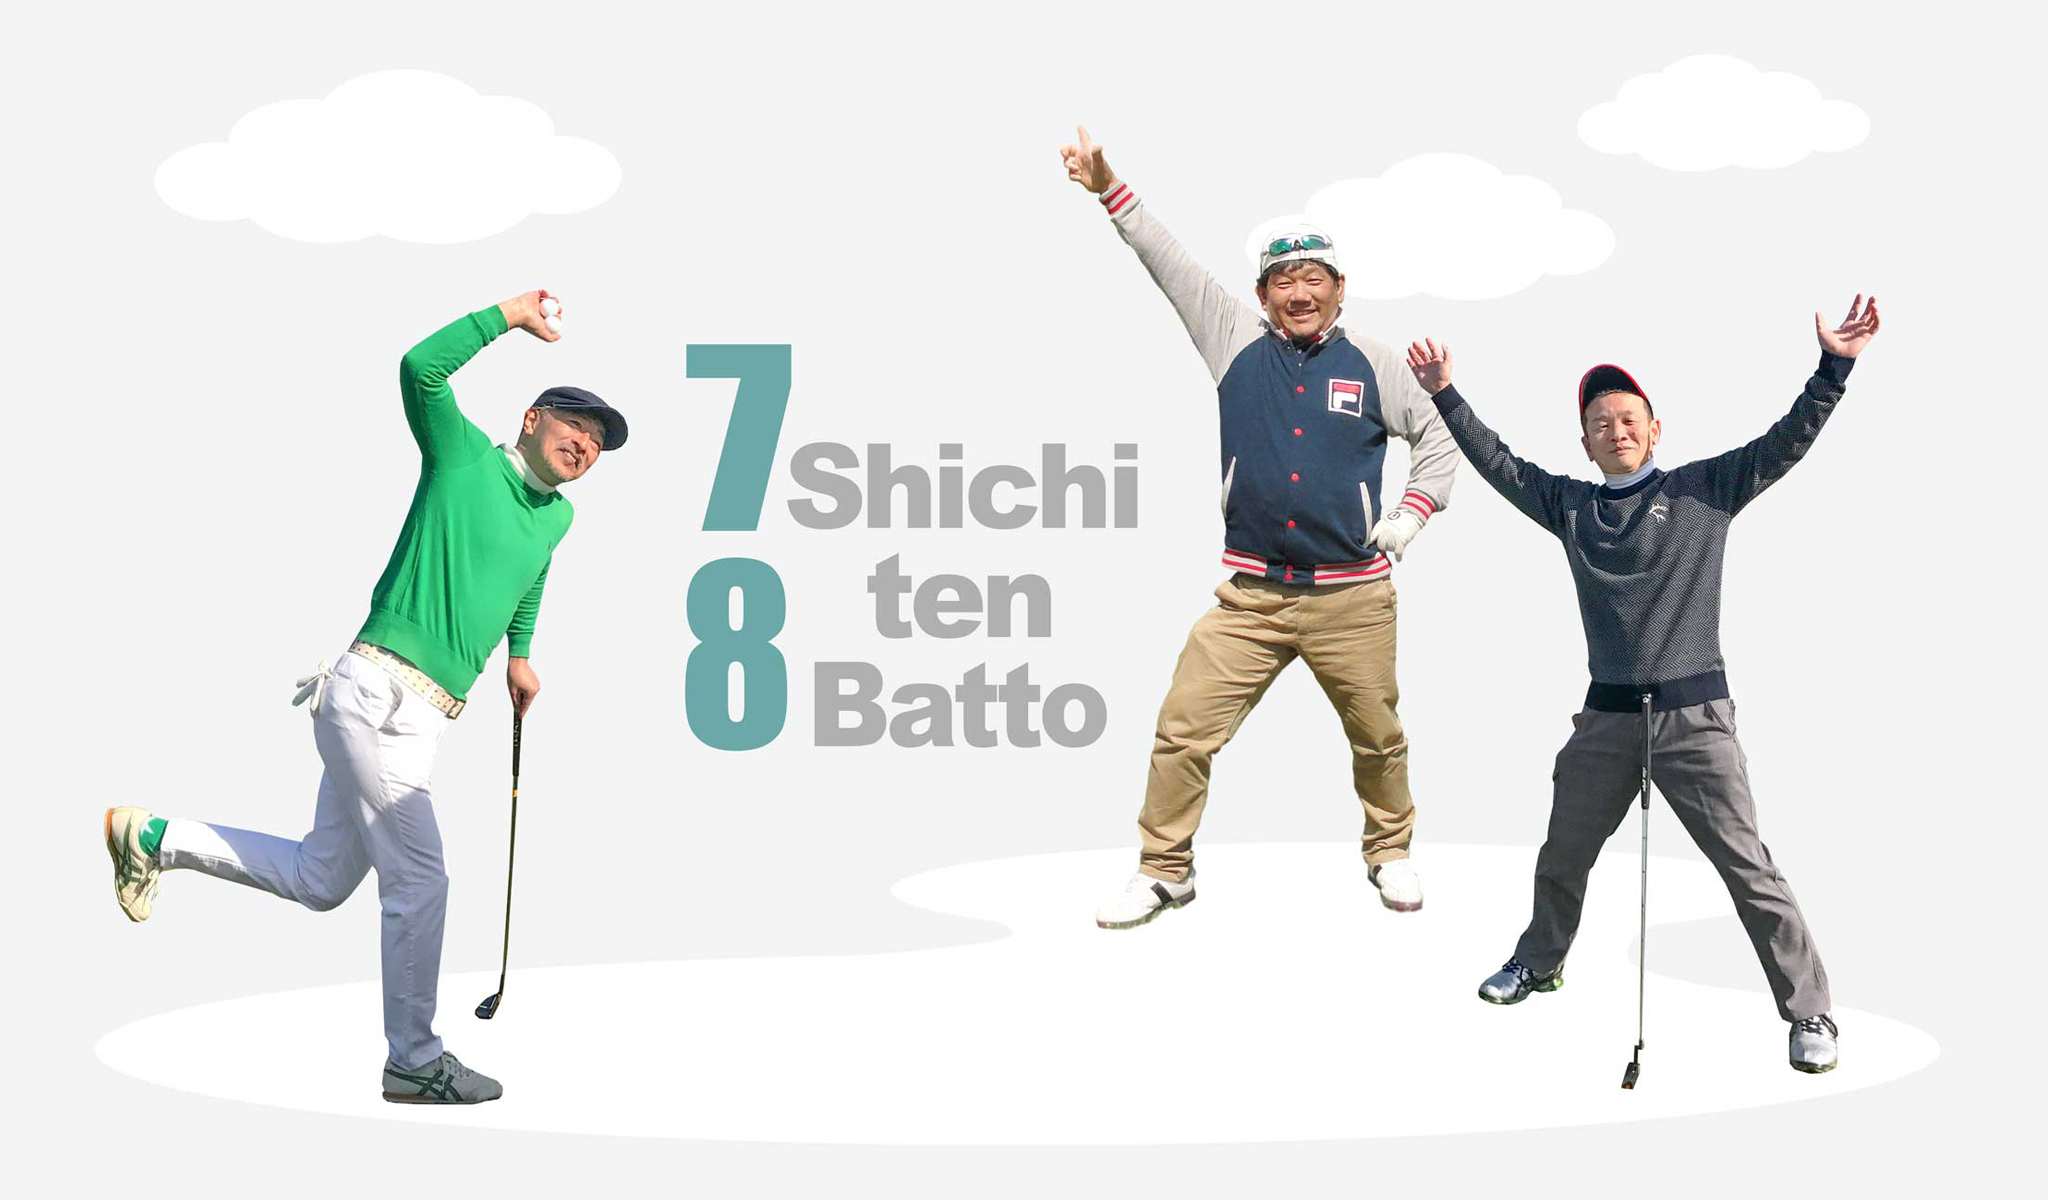 TOPページのスライダー画像2は関西ゴルフサークル セブンエイト松村さん、大橋さん、長谷川さん